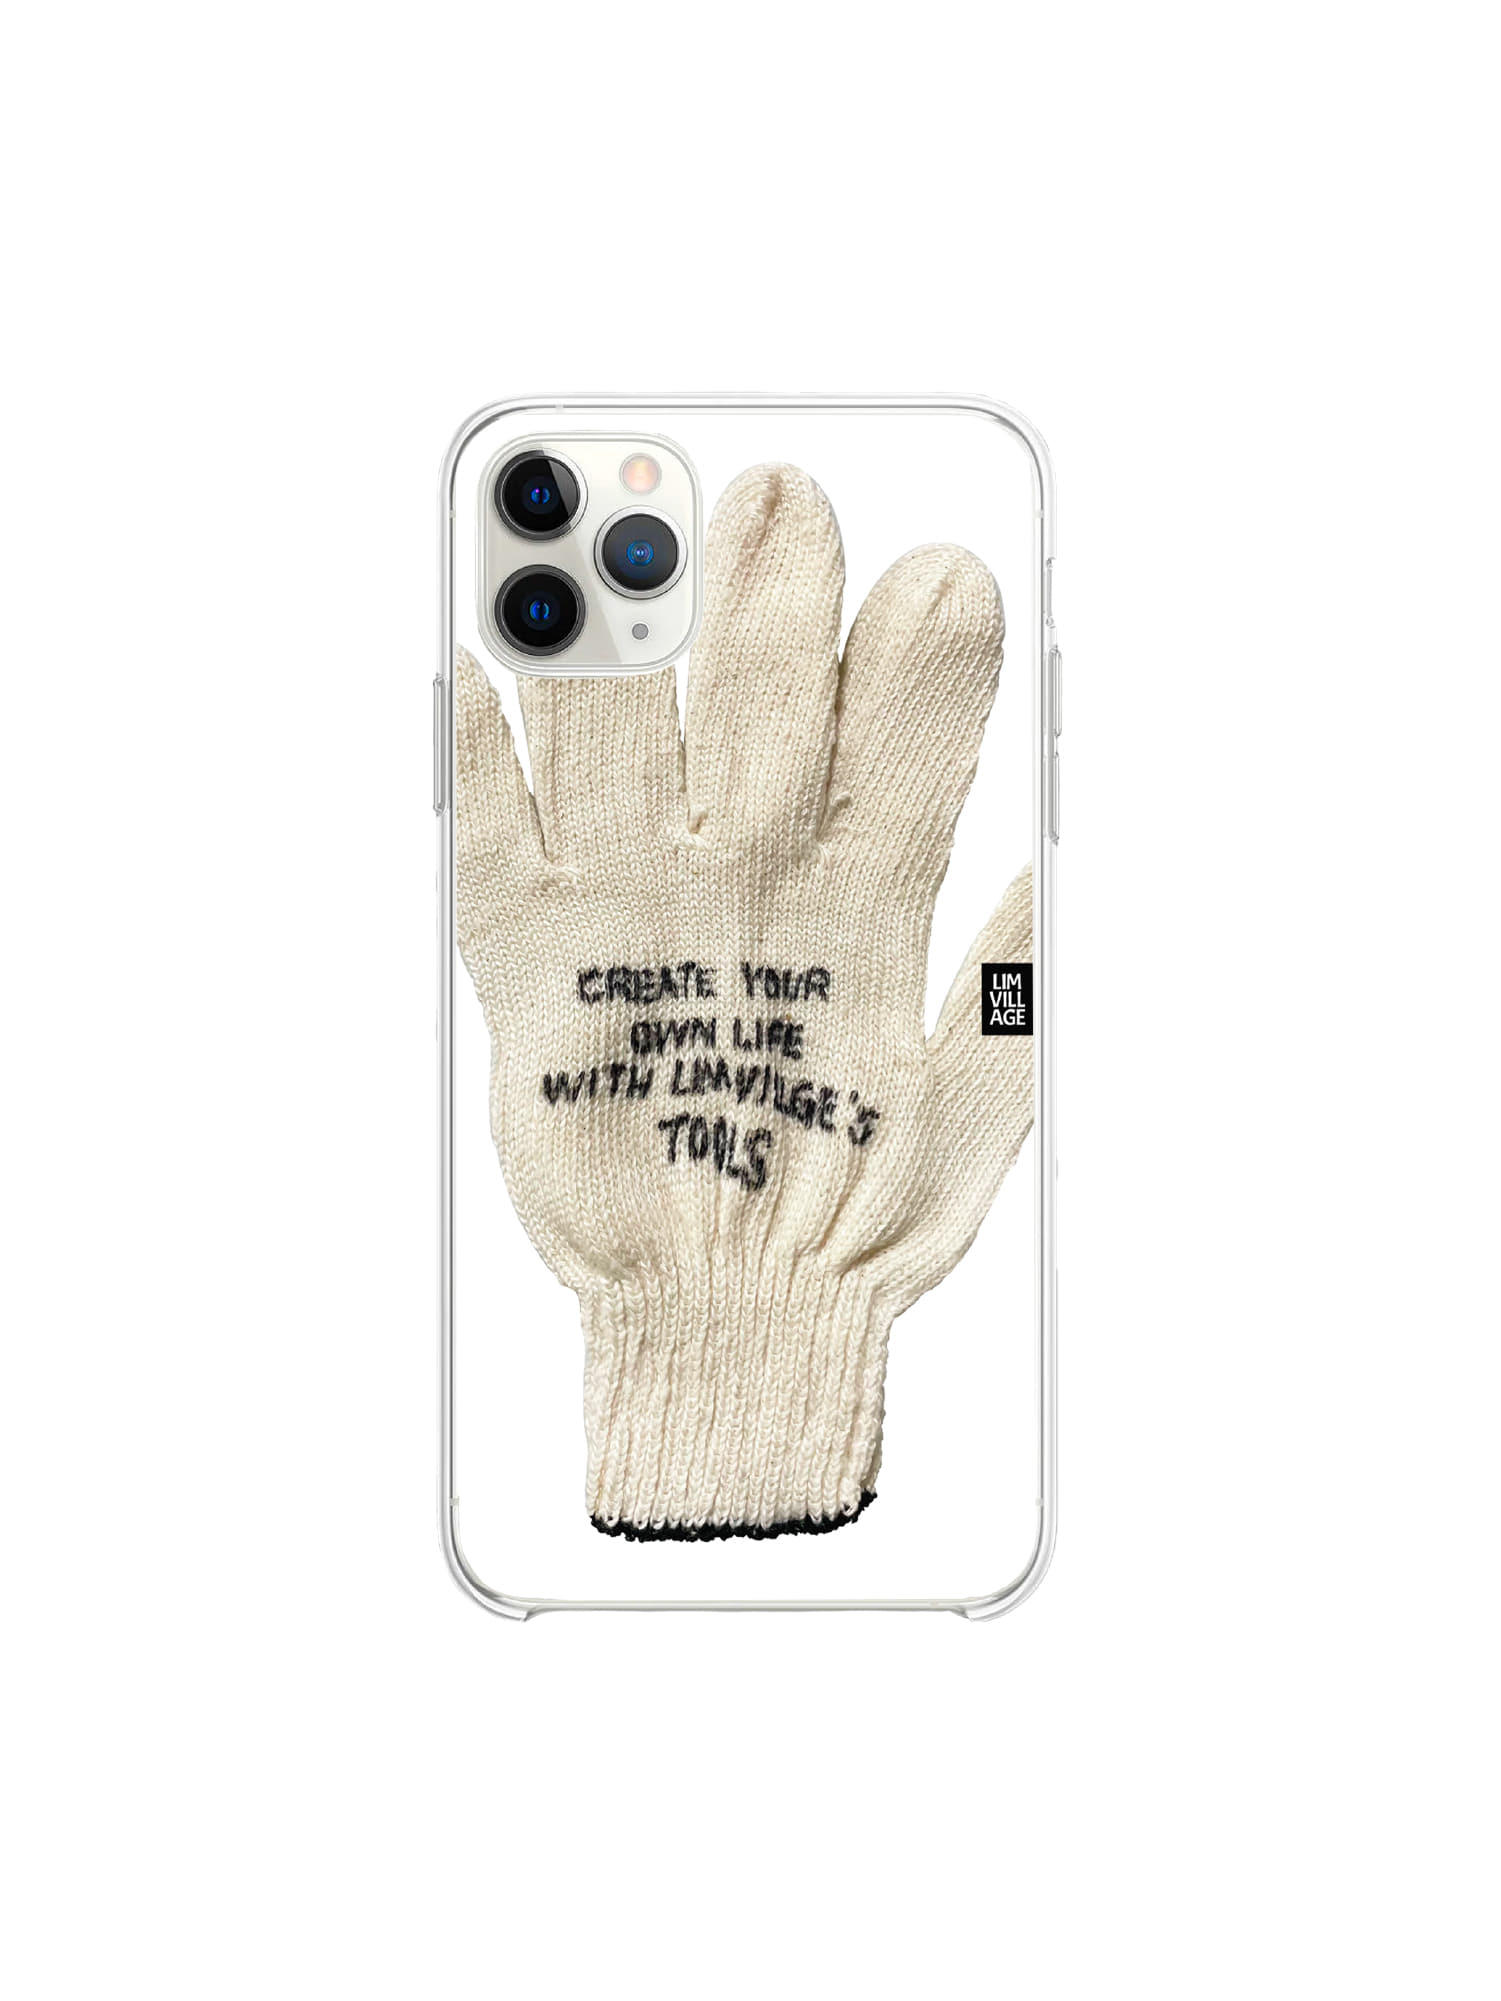 Glove Case